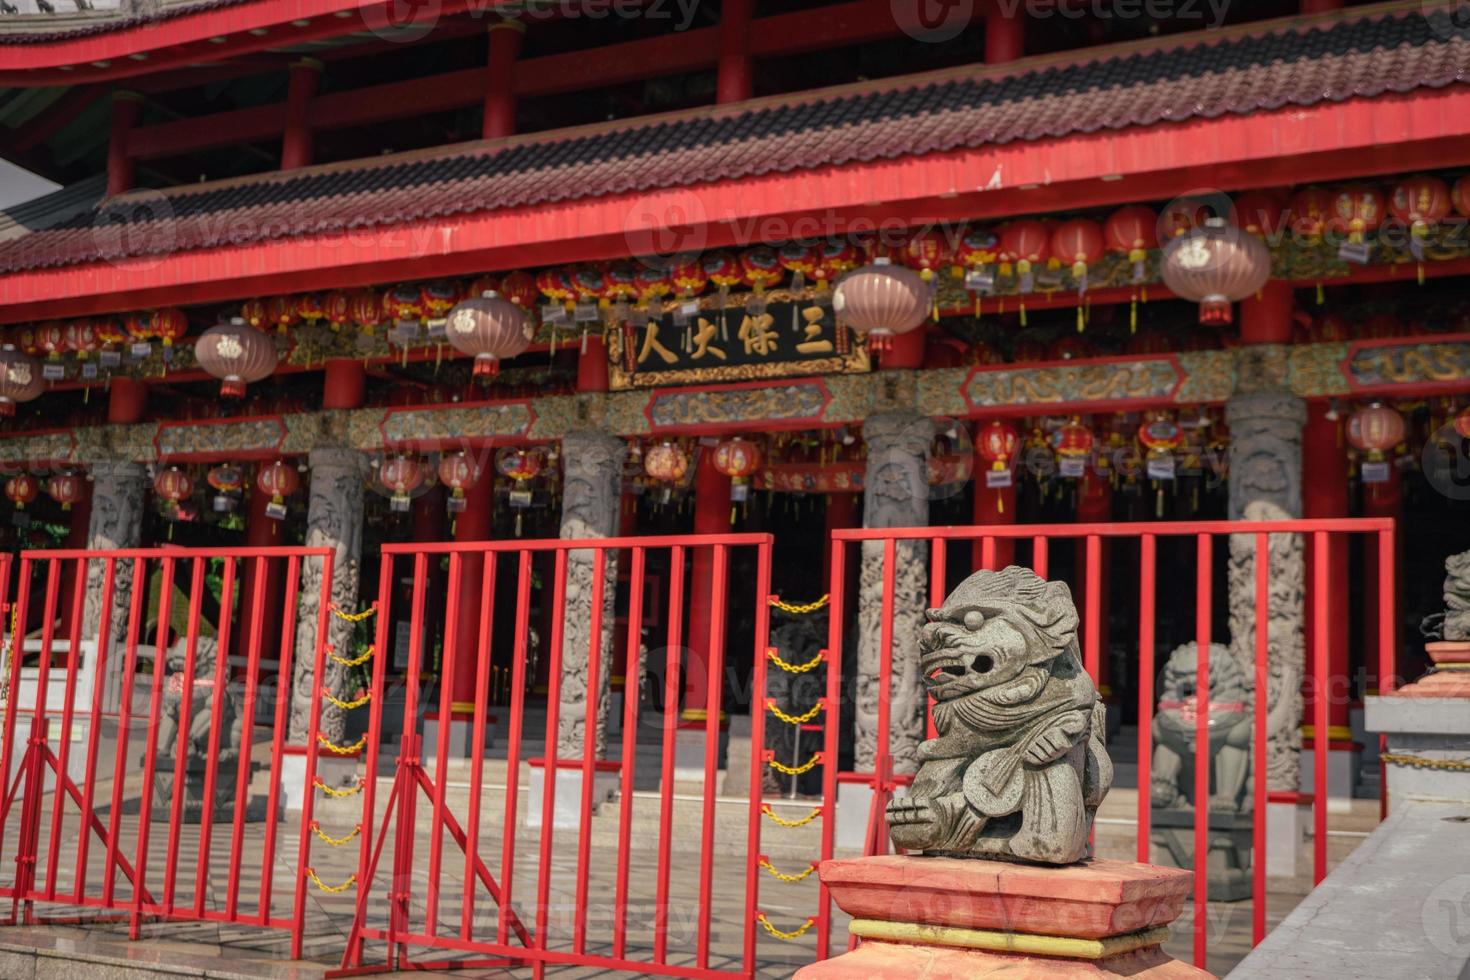 traditionell kinesisk väktare Port stadga på de kinesisk tempel när kinesisk ny år. de Foto är lämplig till använda sig av för kinesisk ny år, lunar ny år bakgrund och innehåll media.